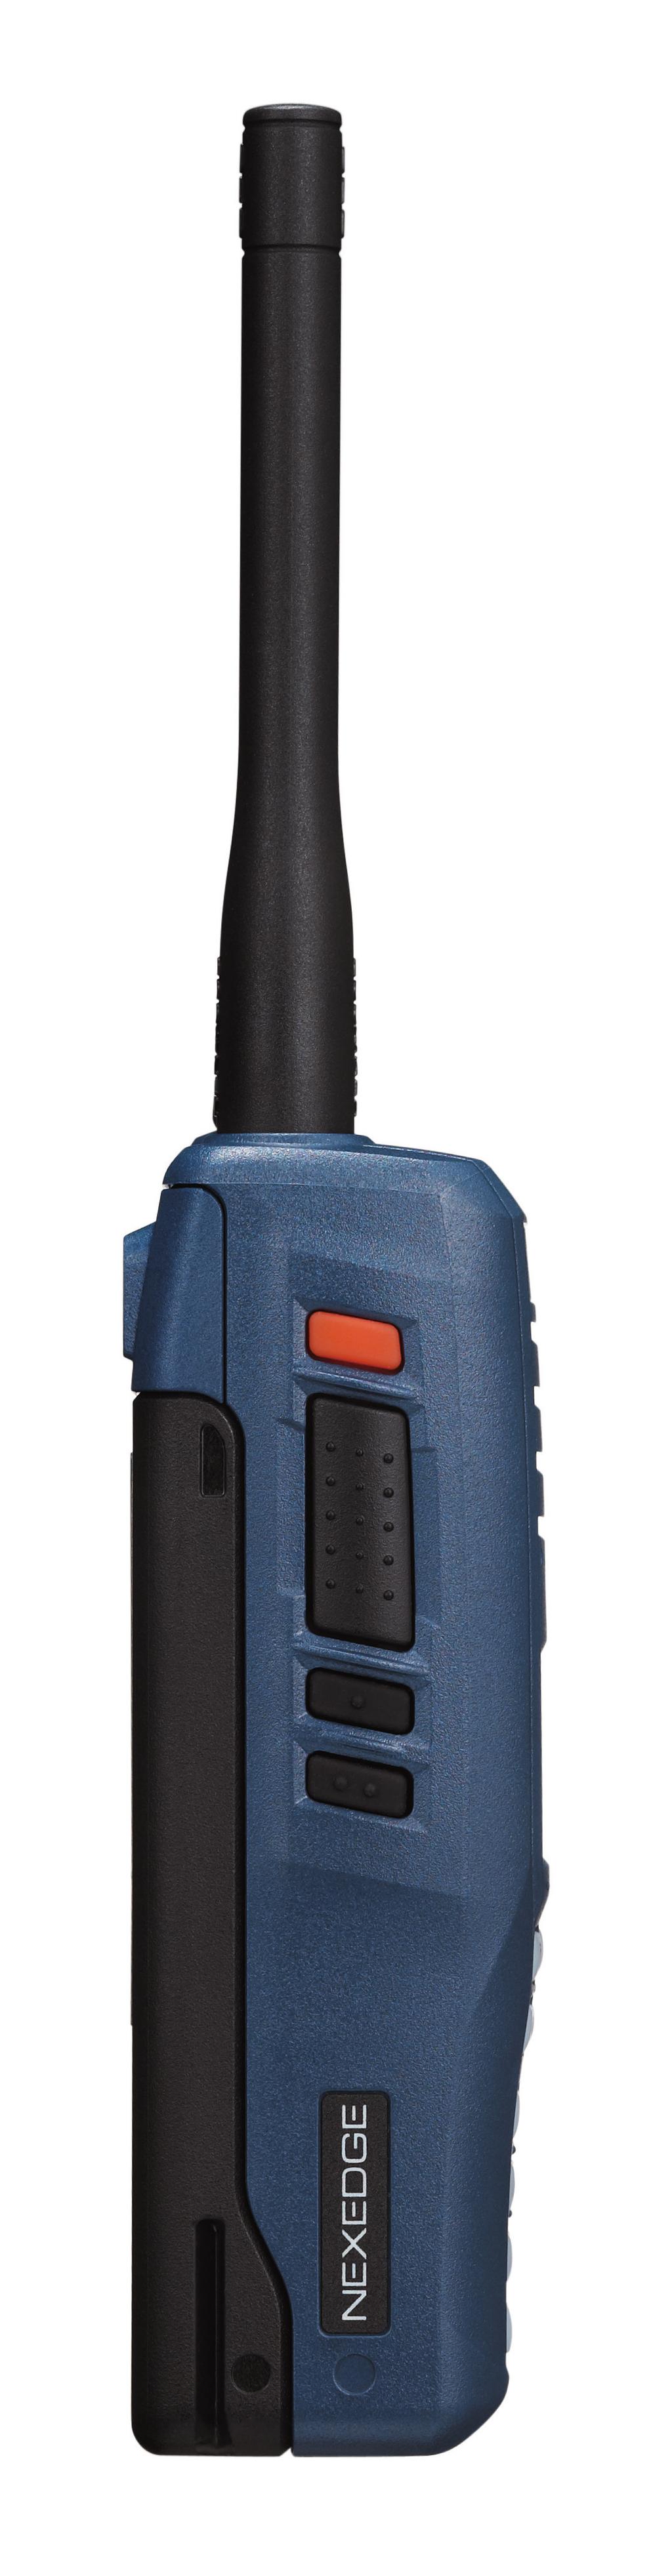 El NX-230EX/330EX también soporta variedad de modos de señalización para facilitar la coexistencia de radios analógicas y digitales.